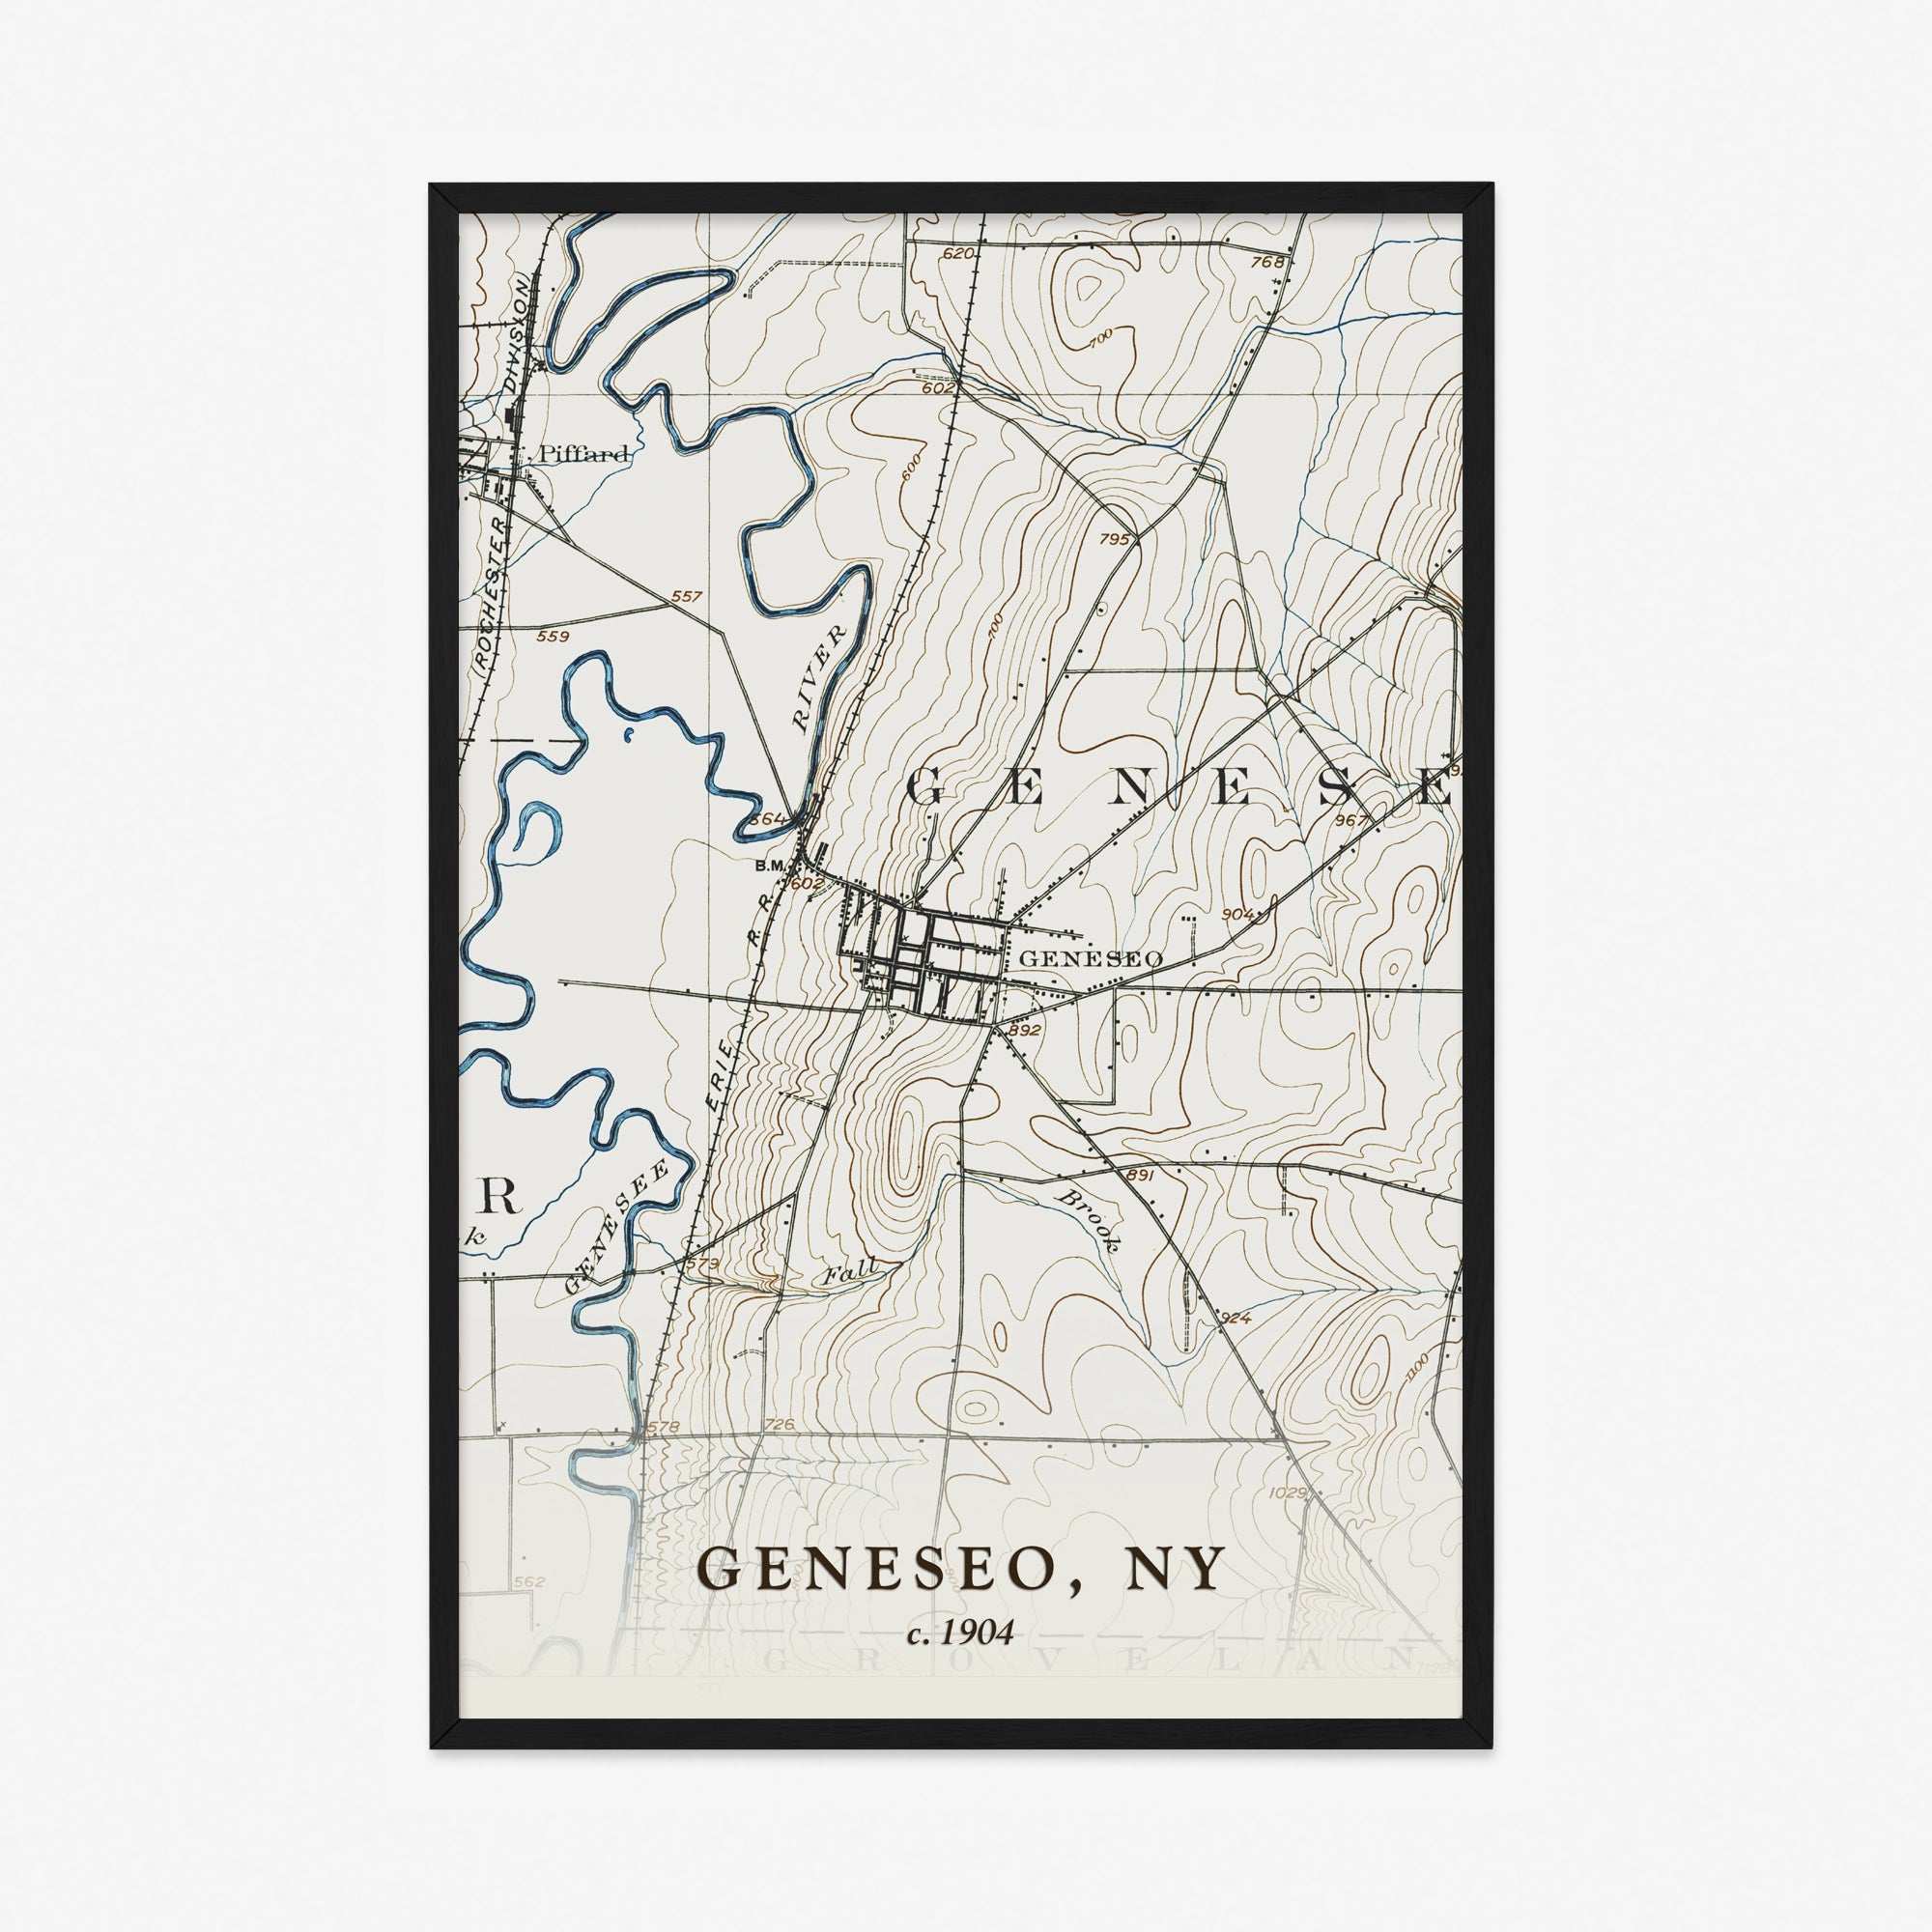 Geneseo, NY - 1904 Topographic Map